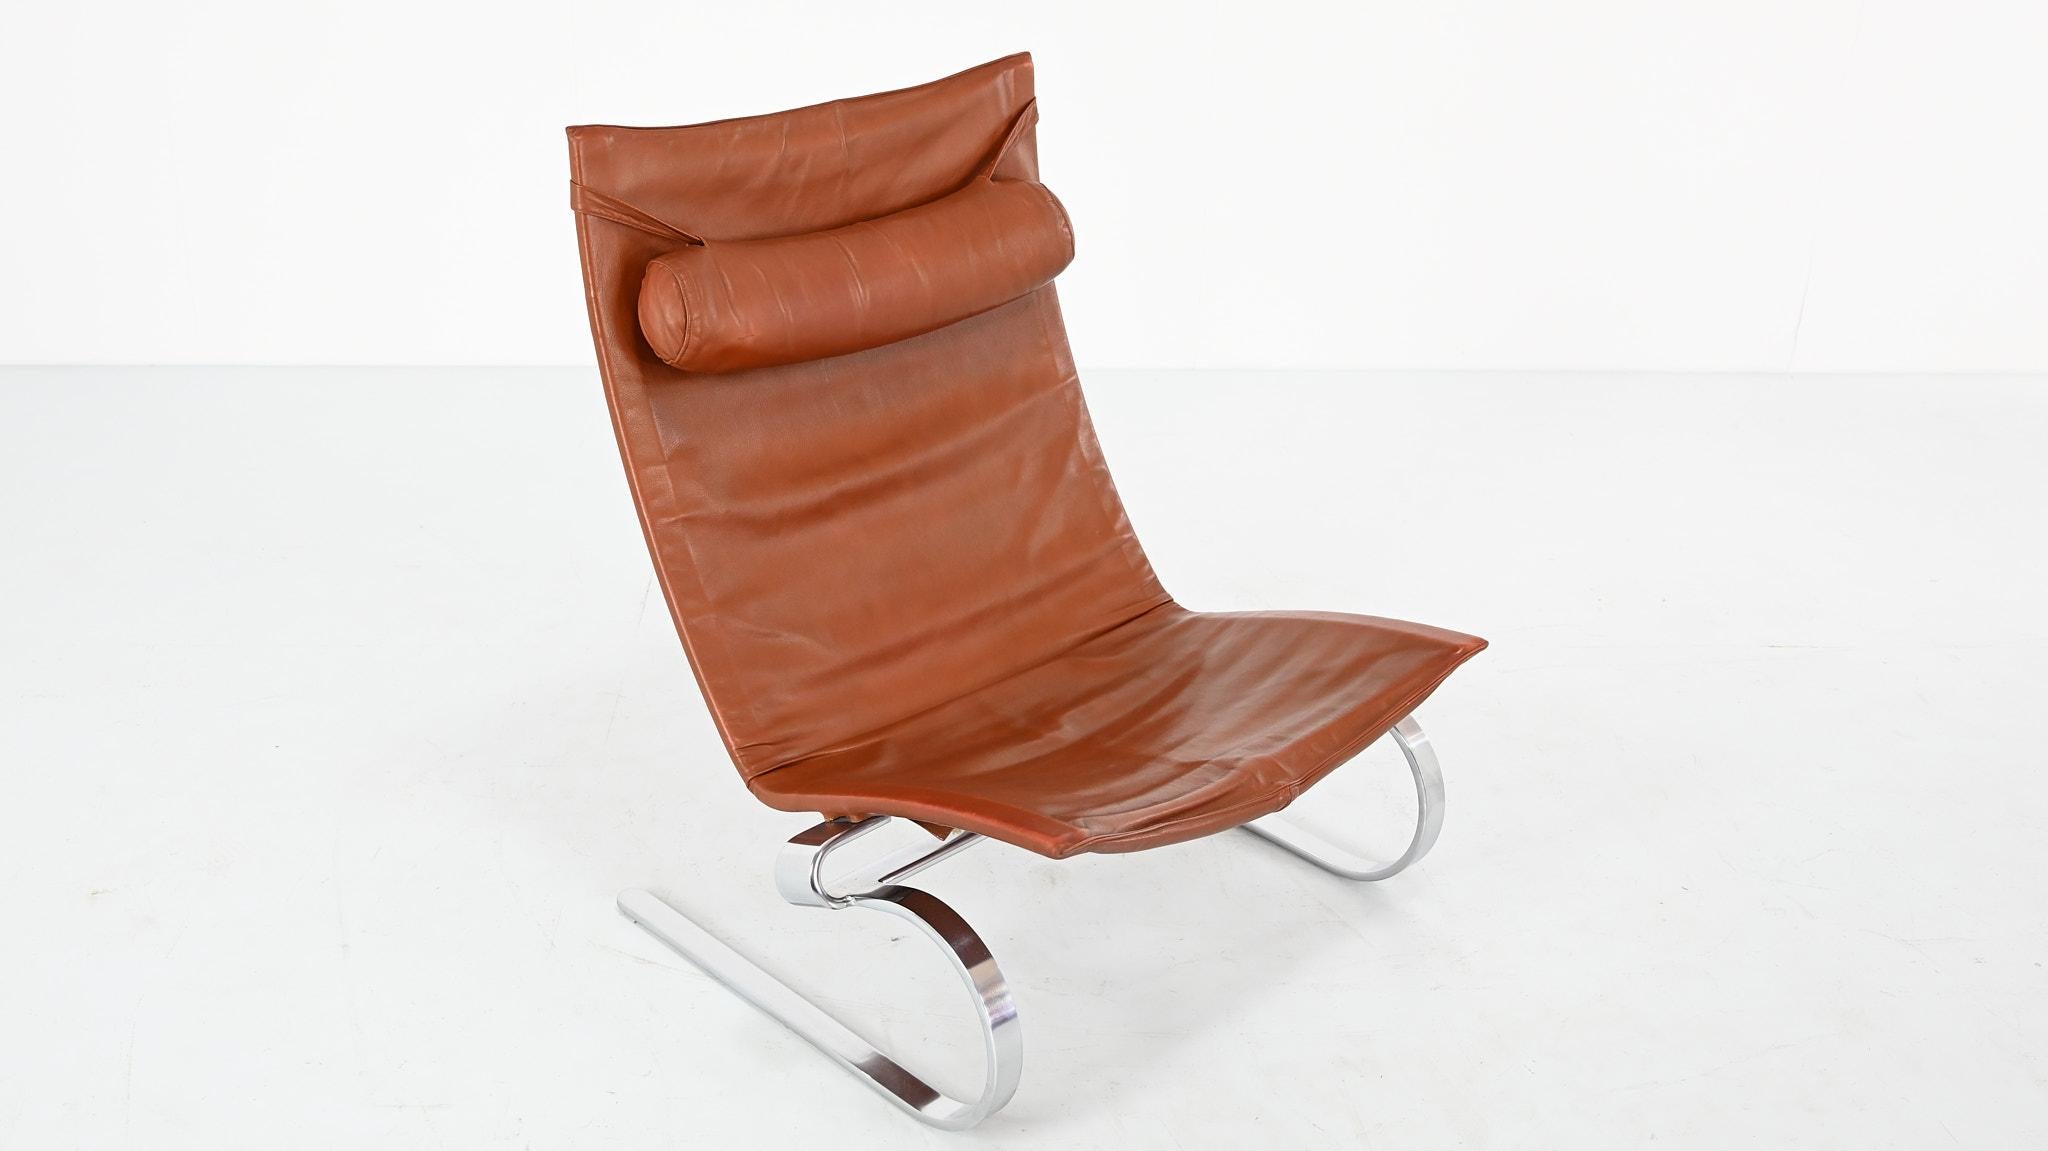 Poul Kjaerholm PK20 Lounge Chair E. Kold Christensen Denmark Steel Leather 1968 For Sale 3